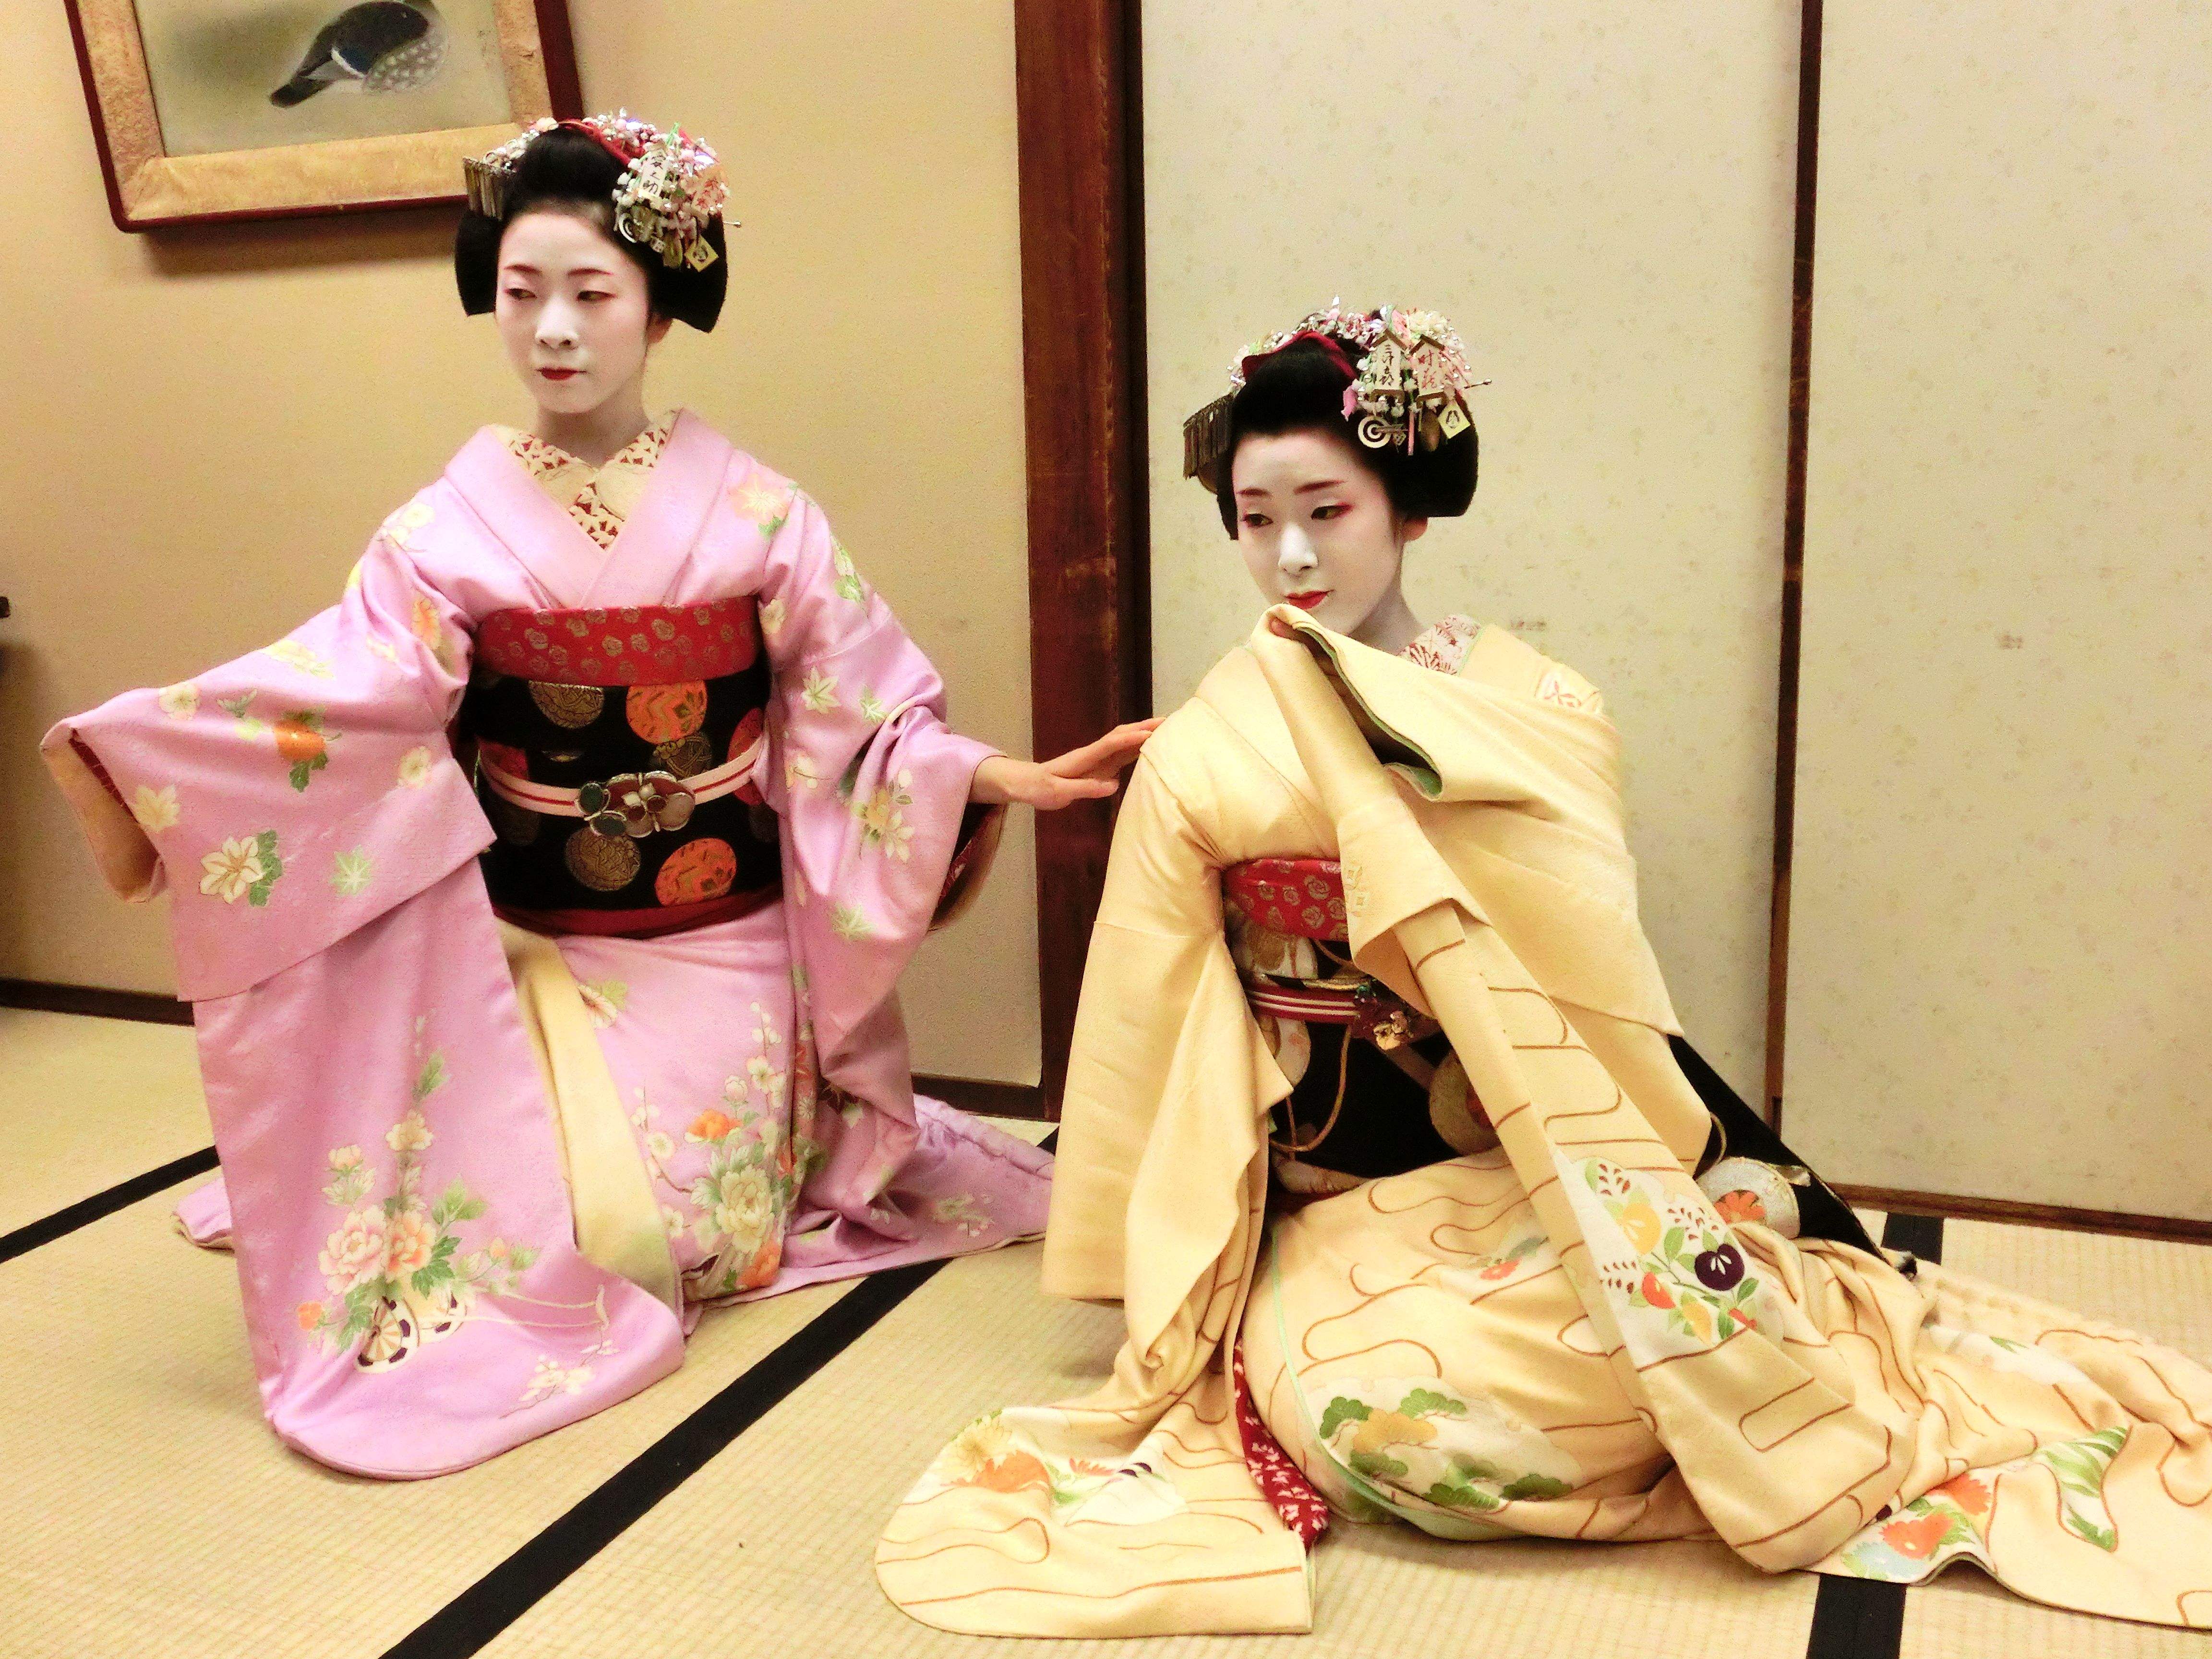 日本舞伎光鲜的背后,经历过什么?